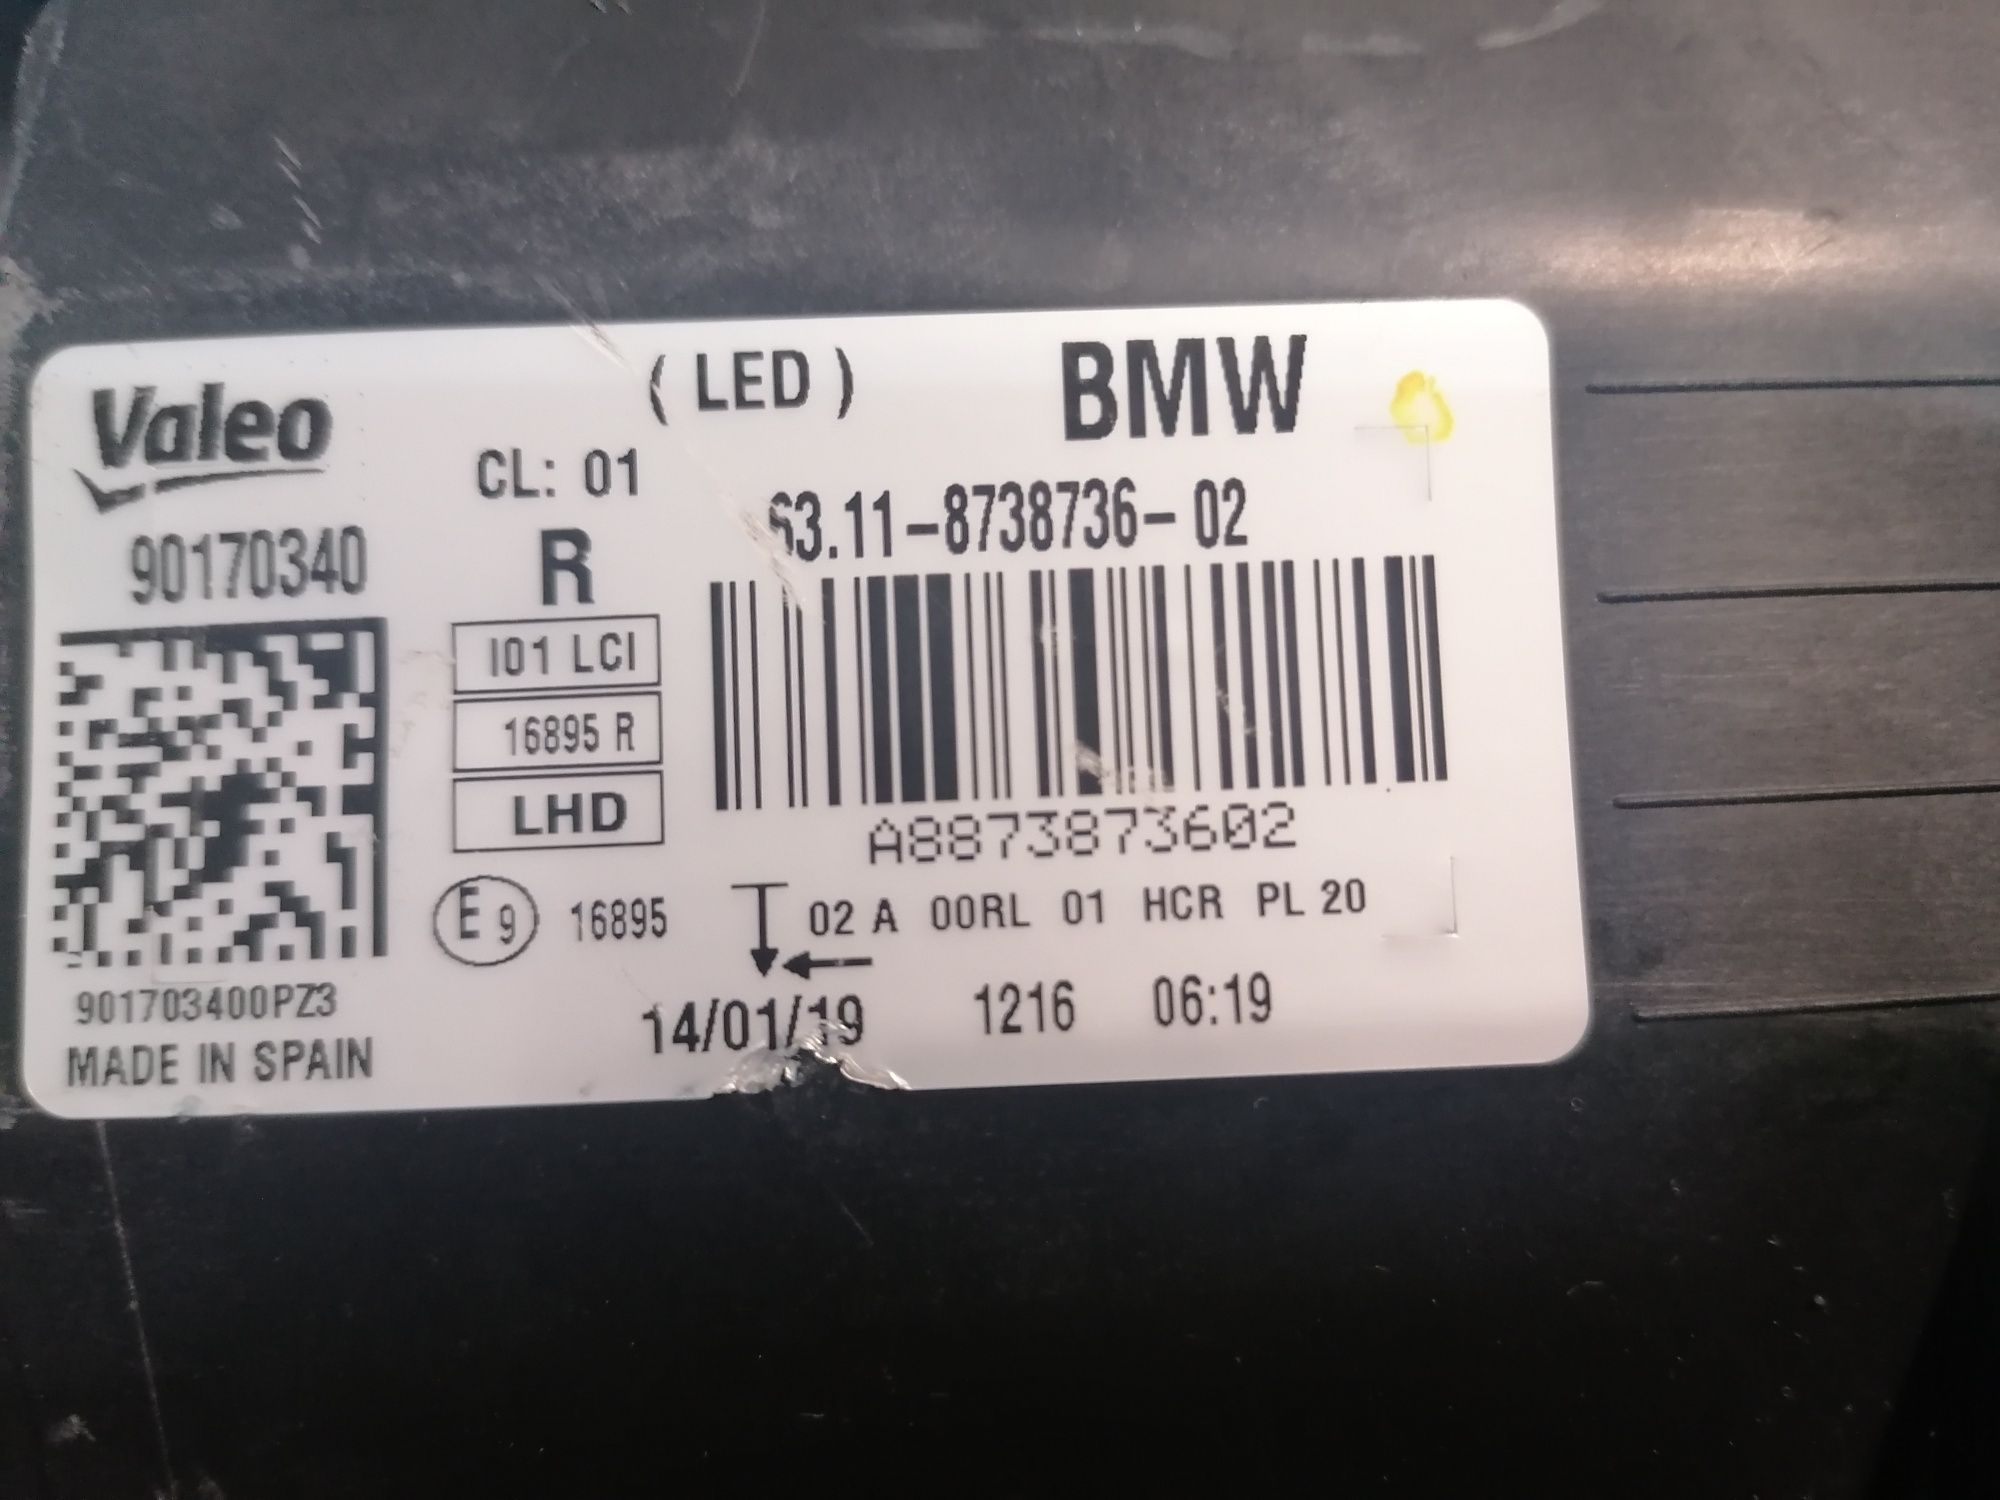 Фар Фарове за BMW LED i3 i01 / БМВ ЛЕД  и3 и01.